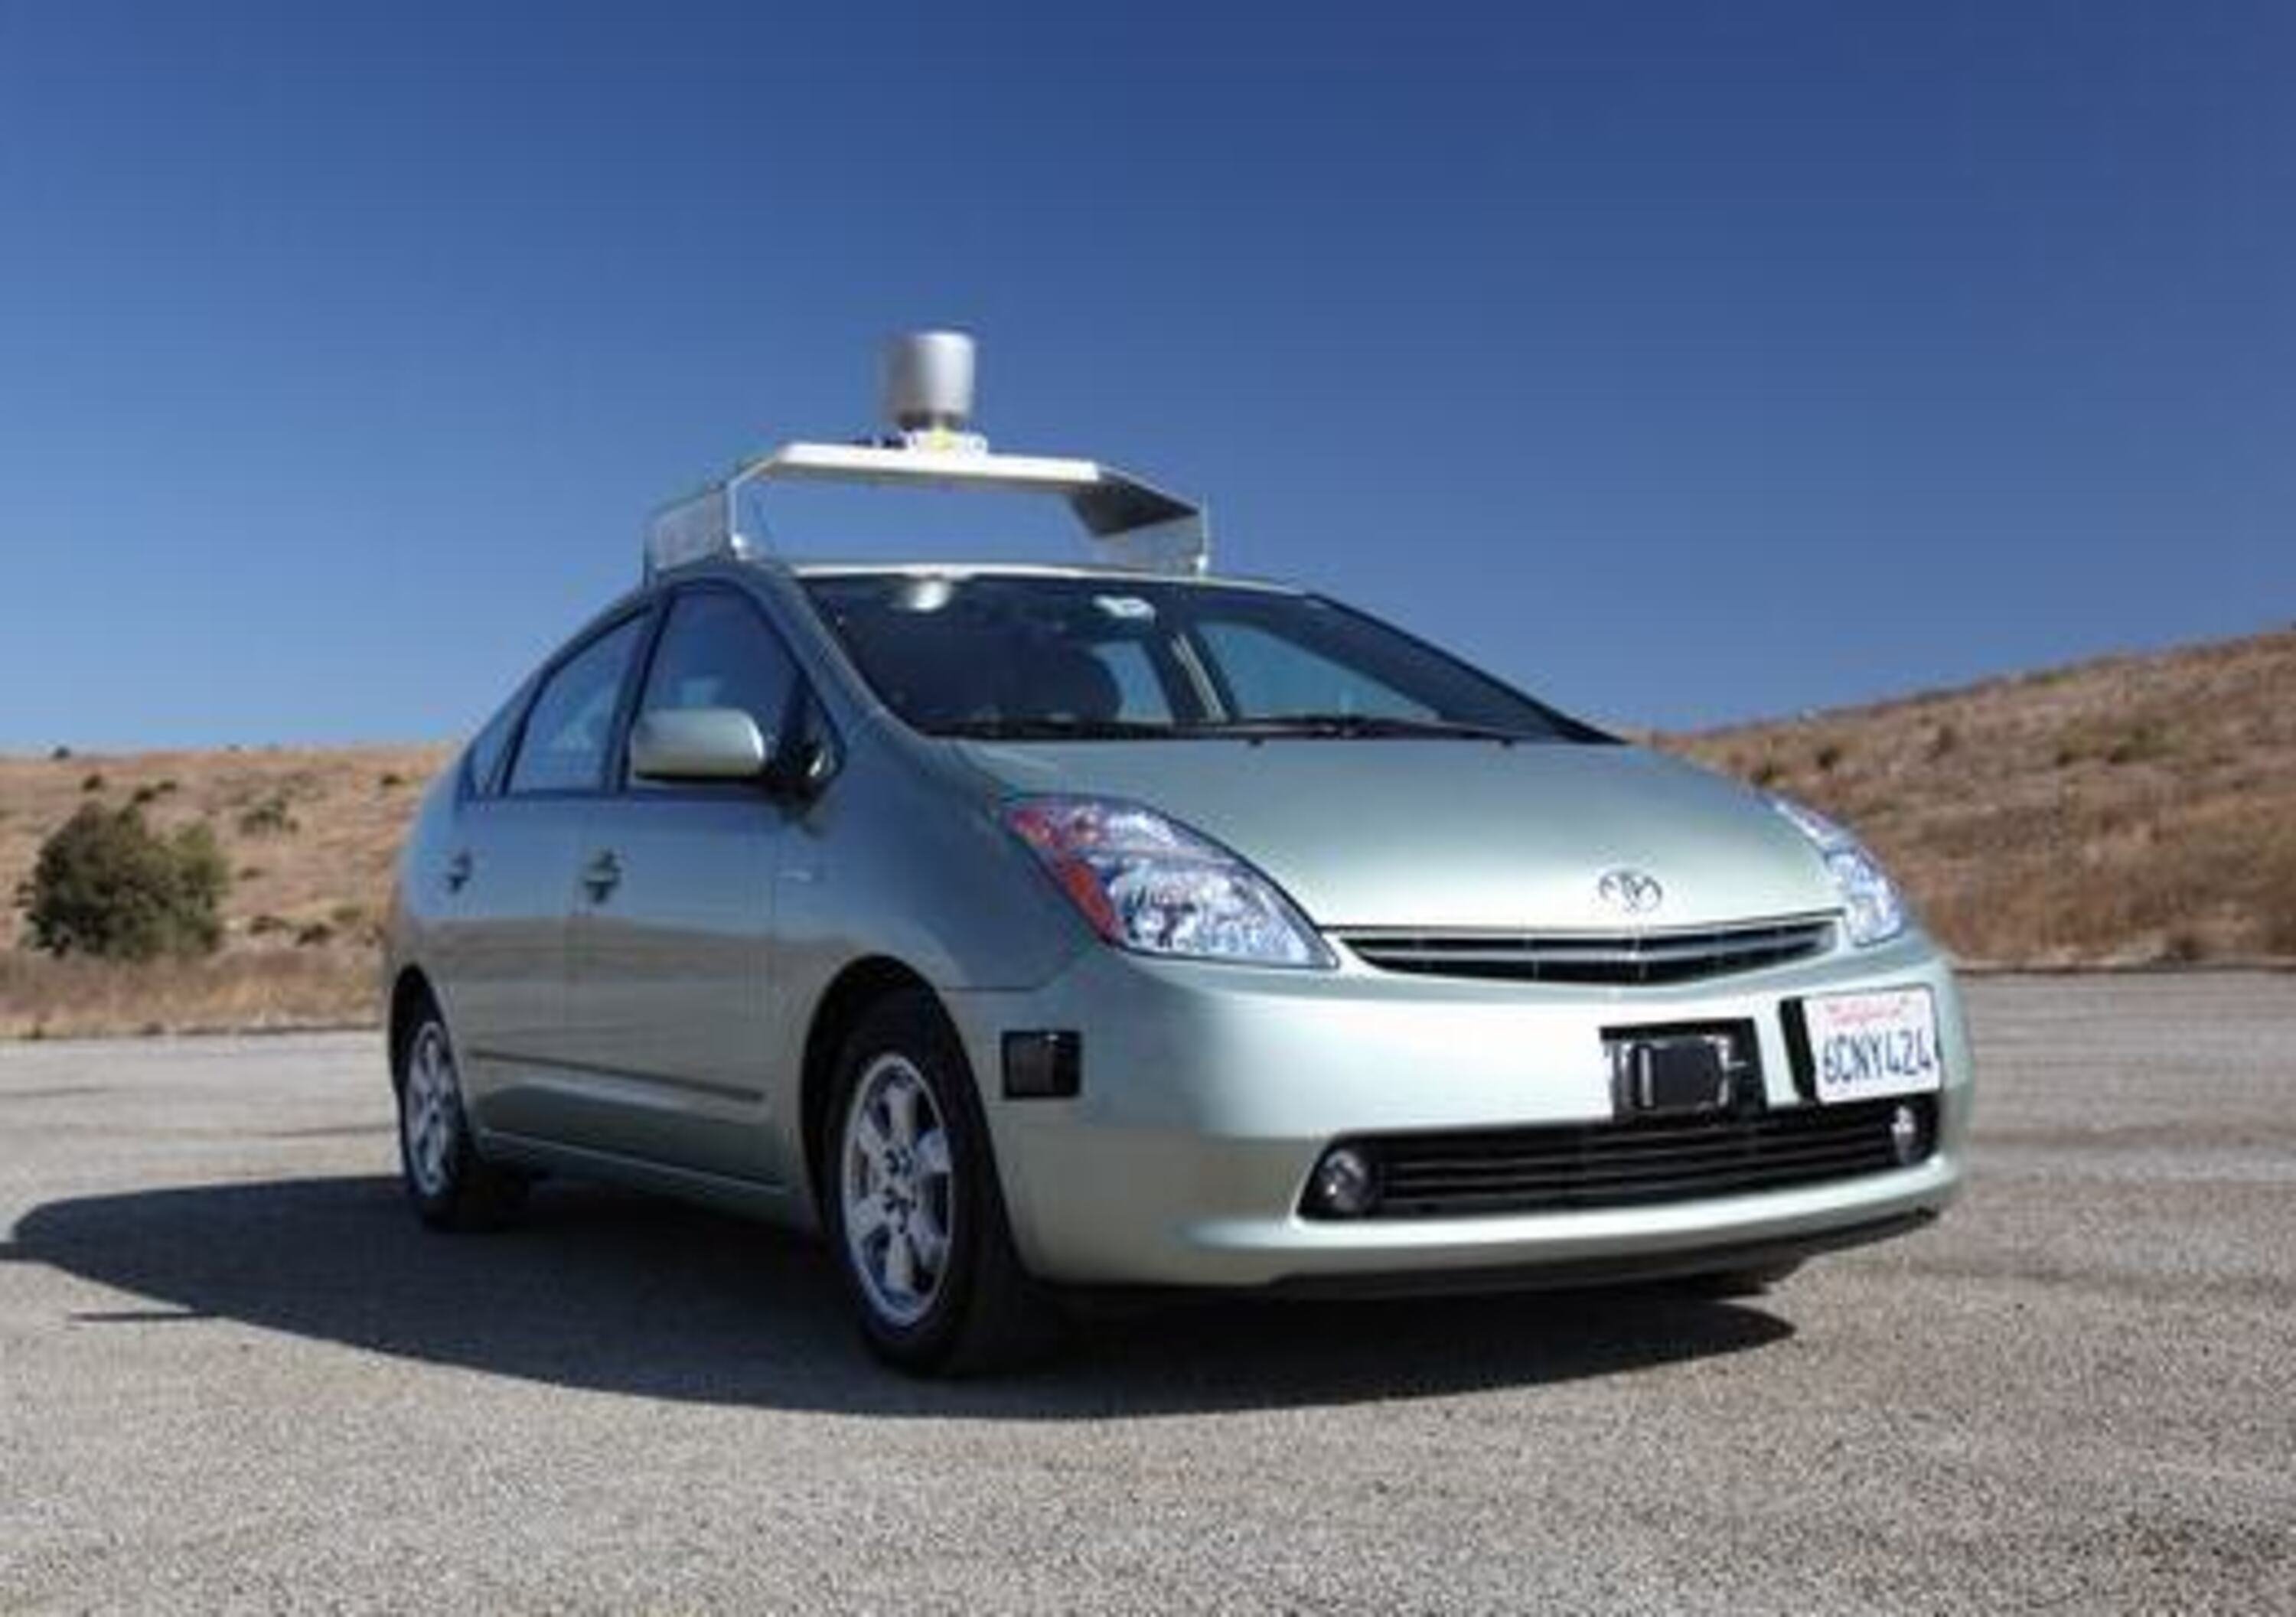 Auto a guida autonoma: la California approva il disegno di legge